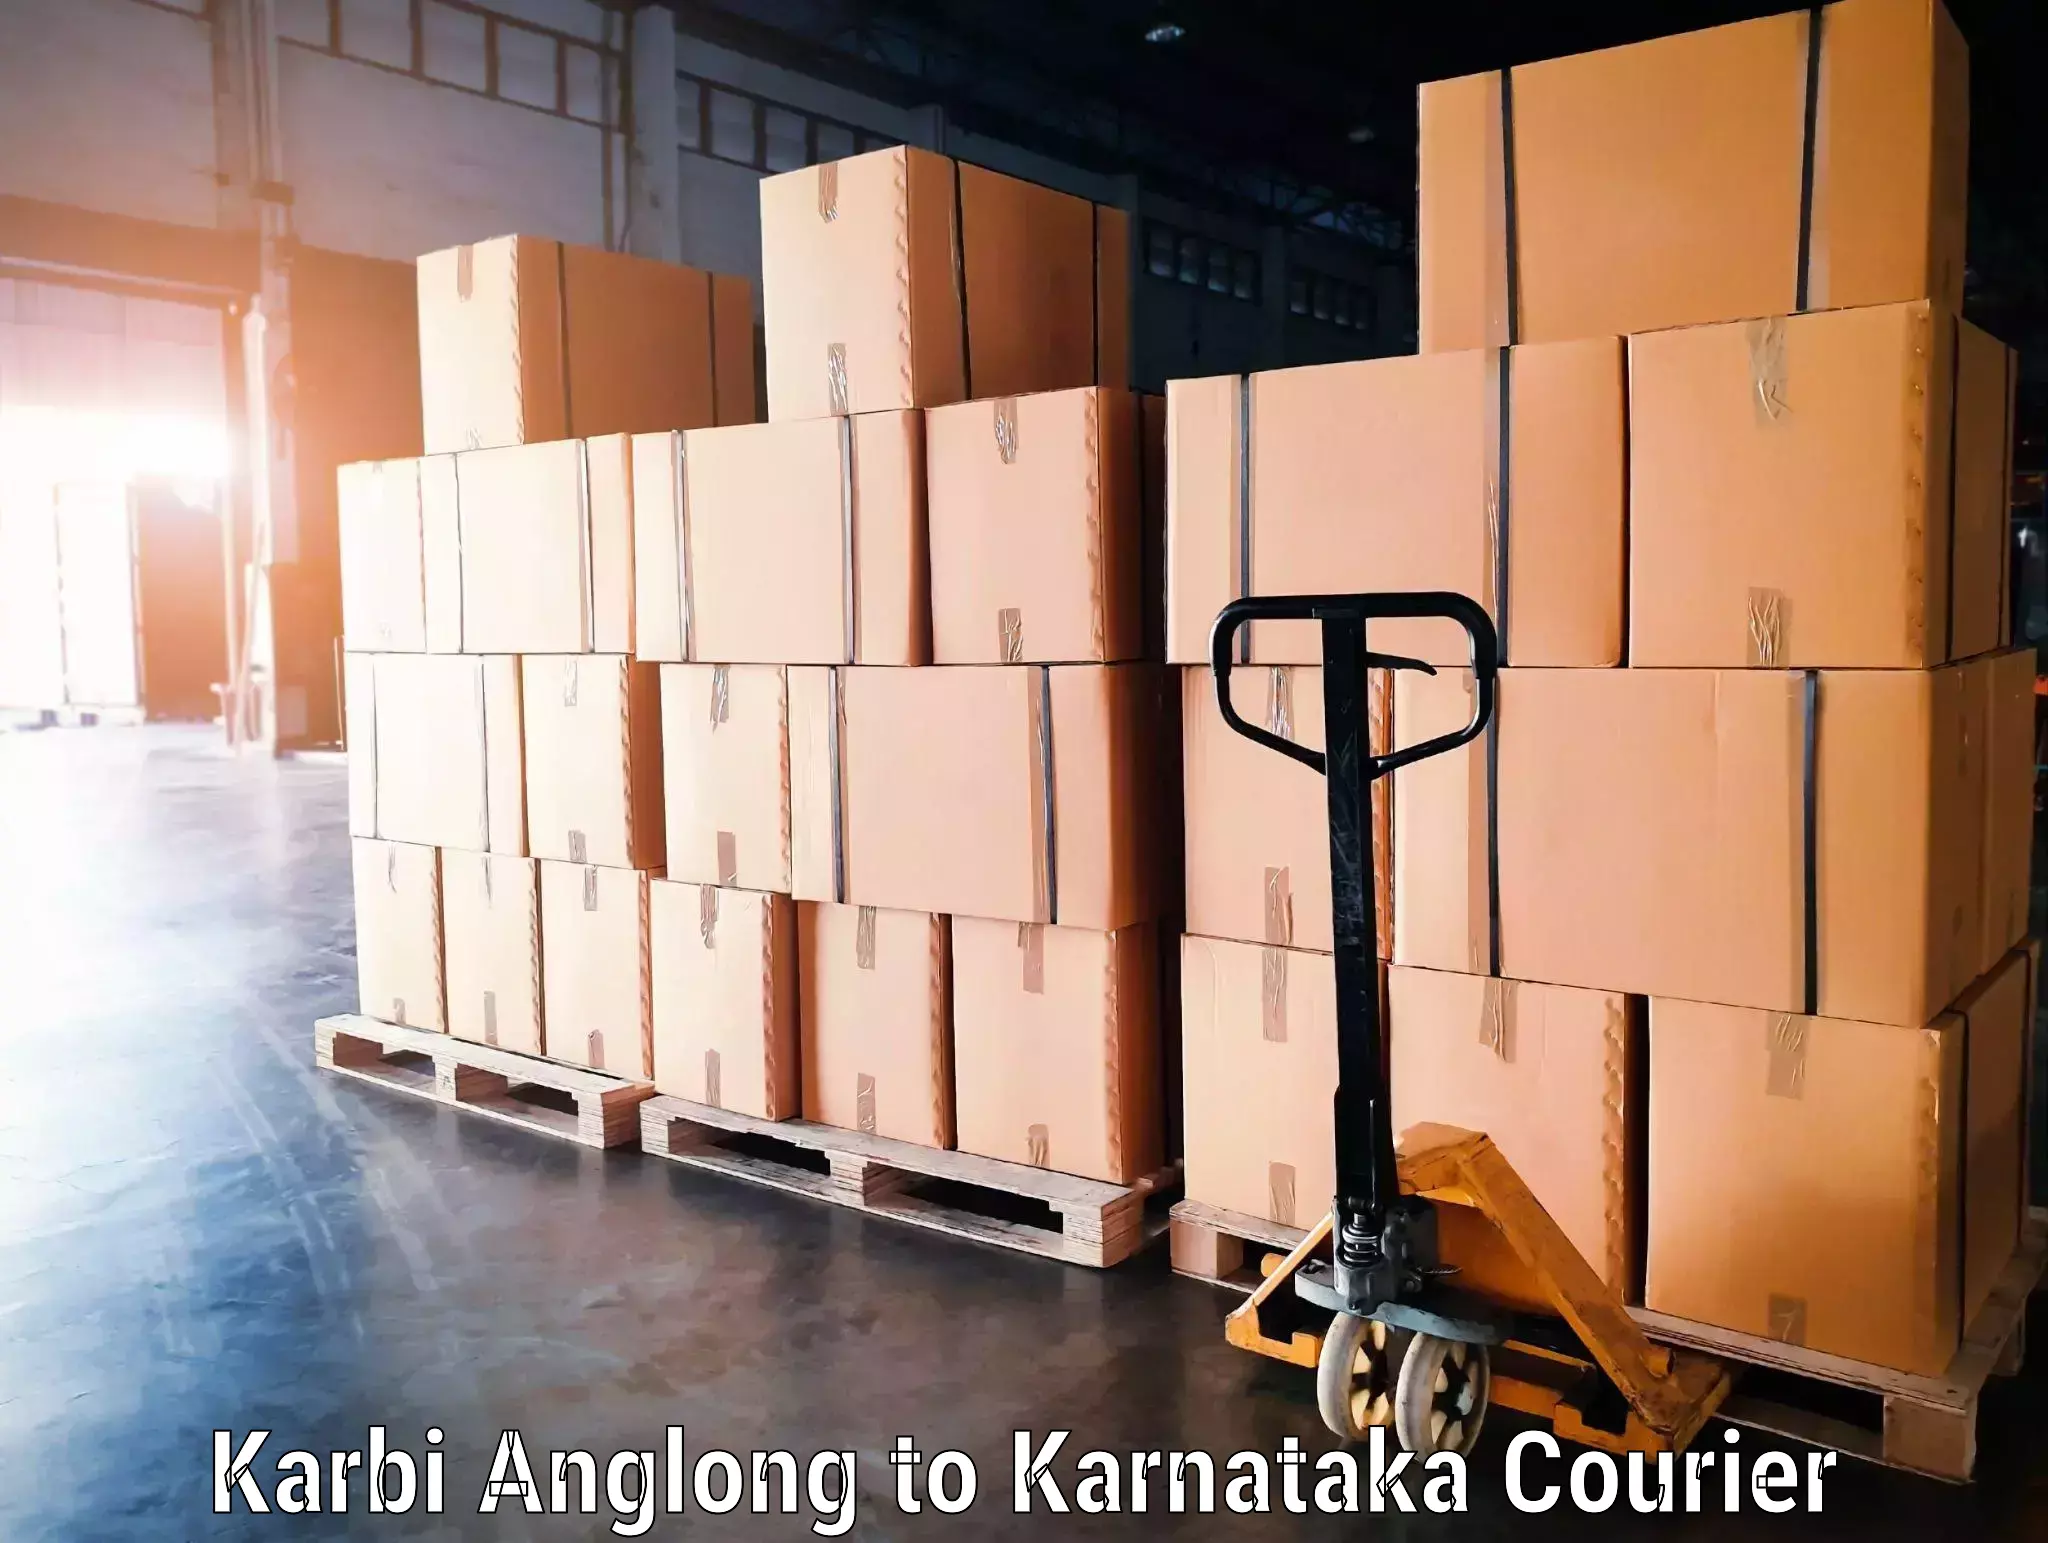 Luggage shipment processing Karbi Anglong to Yellapur